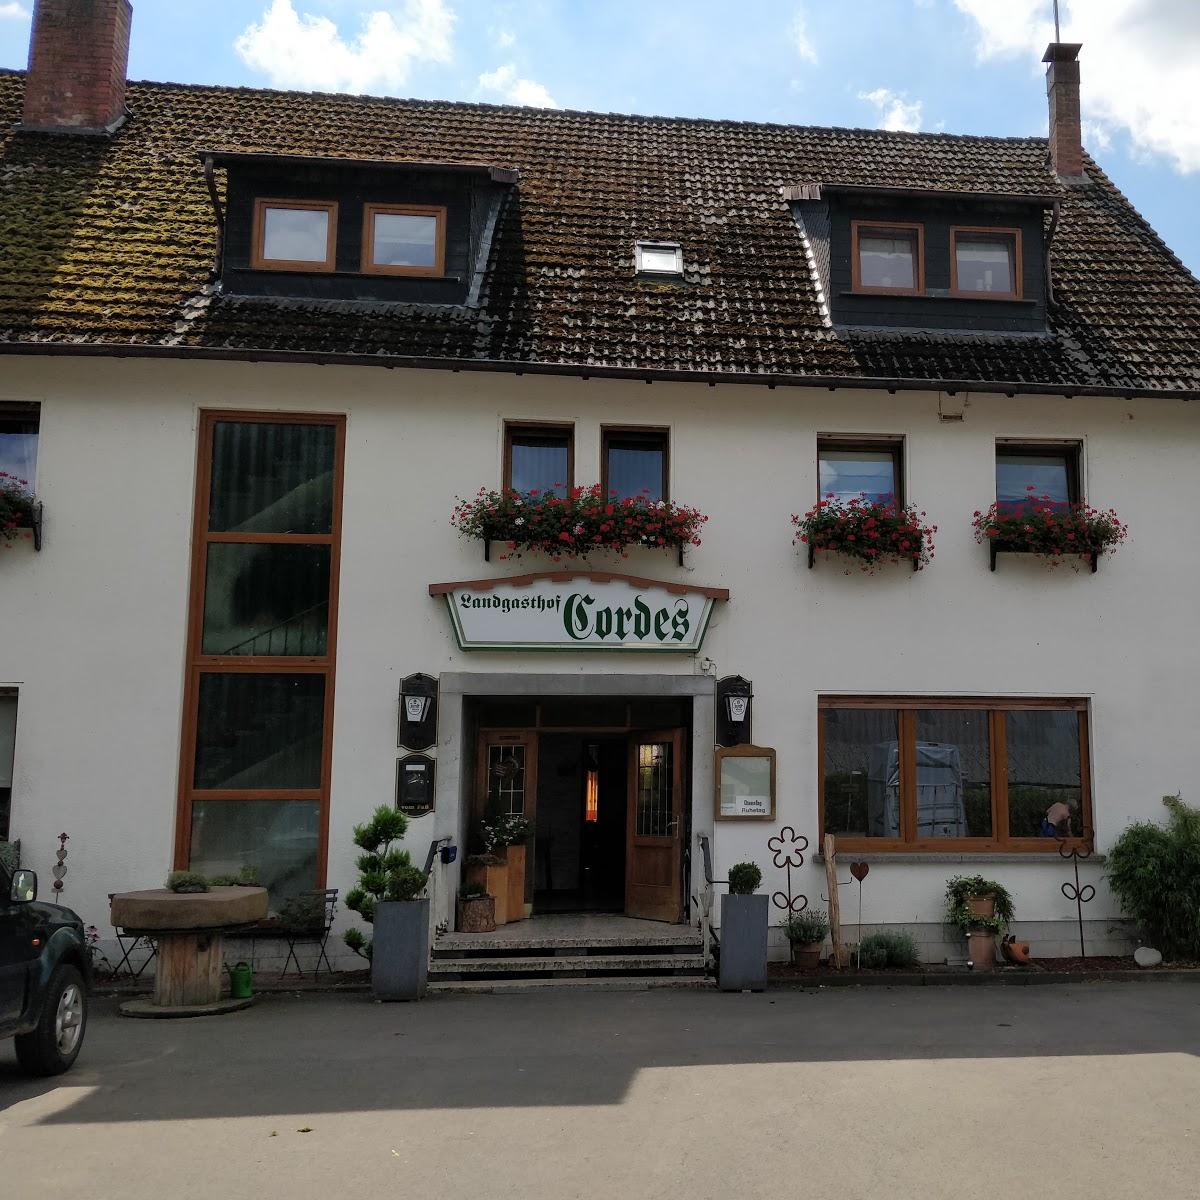 Restaurant "Landgasthof Cordes" in Mittelhof